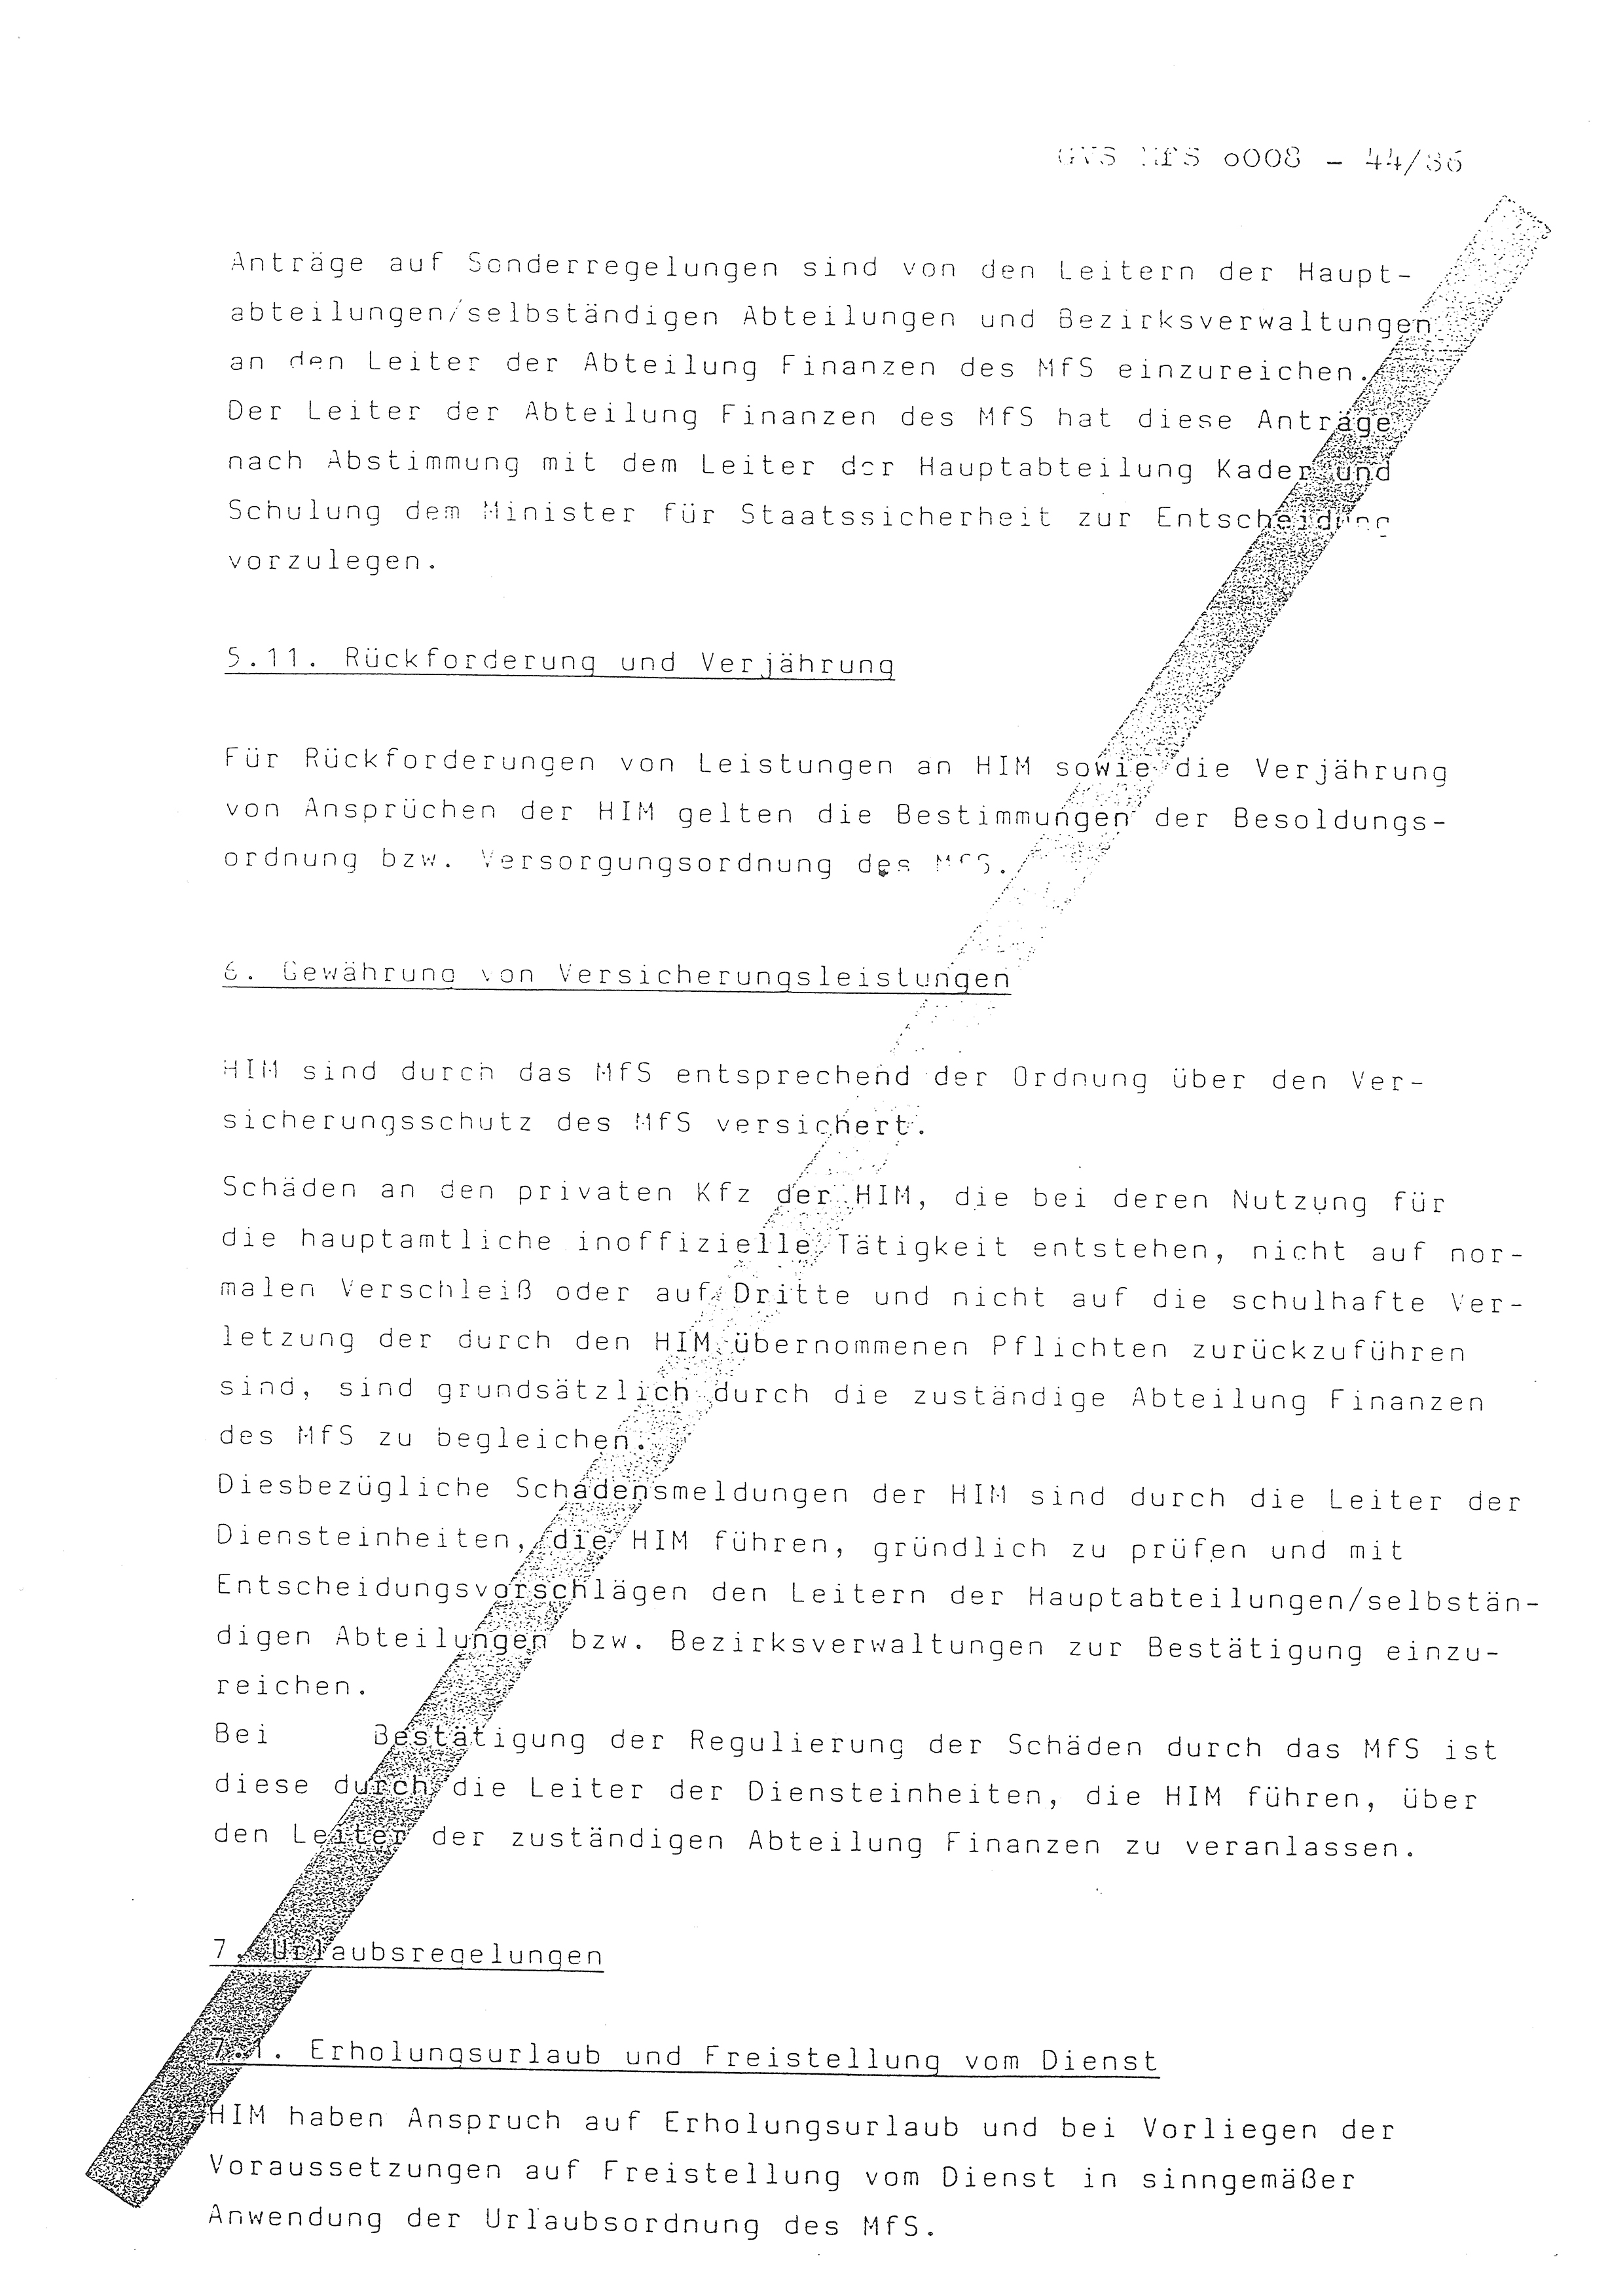 2. Durchführungsbestimmung zur Richtlinie 1/79 über die Arbeit mit hauptamtlichen Mitarbeitern des MfS (HIM), Deutsche Demokratische Republik (DDR), Ministerium für Staatssicherheit (MfS), Der Minister (Mielke), Geheime Verschlußsache (GVS) ooo8-44/86, Berlin 1986, Seite 25 (2. DB RL 1/79 DDR MfS Min. GVS ooo8-44/86 1986, S. 25)